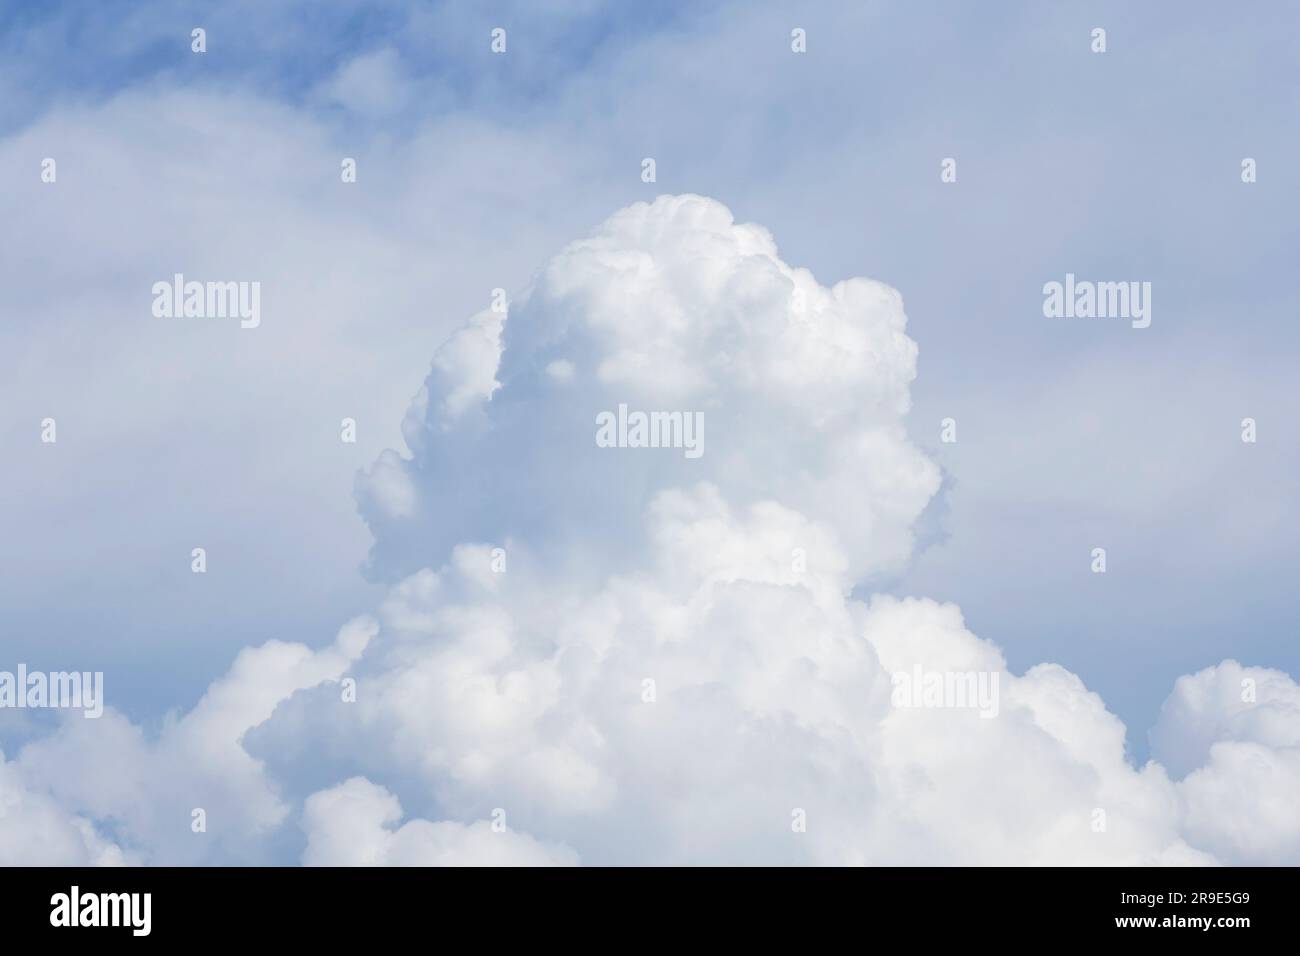 Nahaufnahme von weißer, flauschiger Regenwolke am Himmel Stockfoto